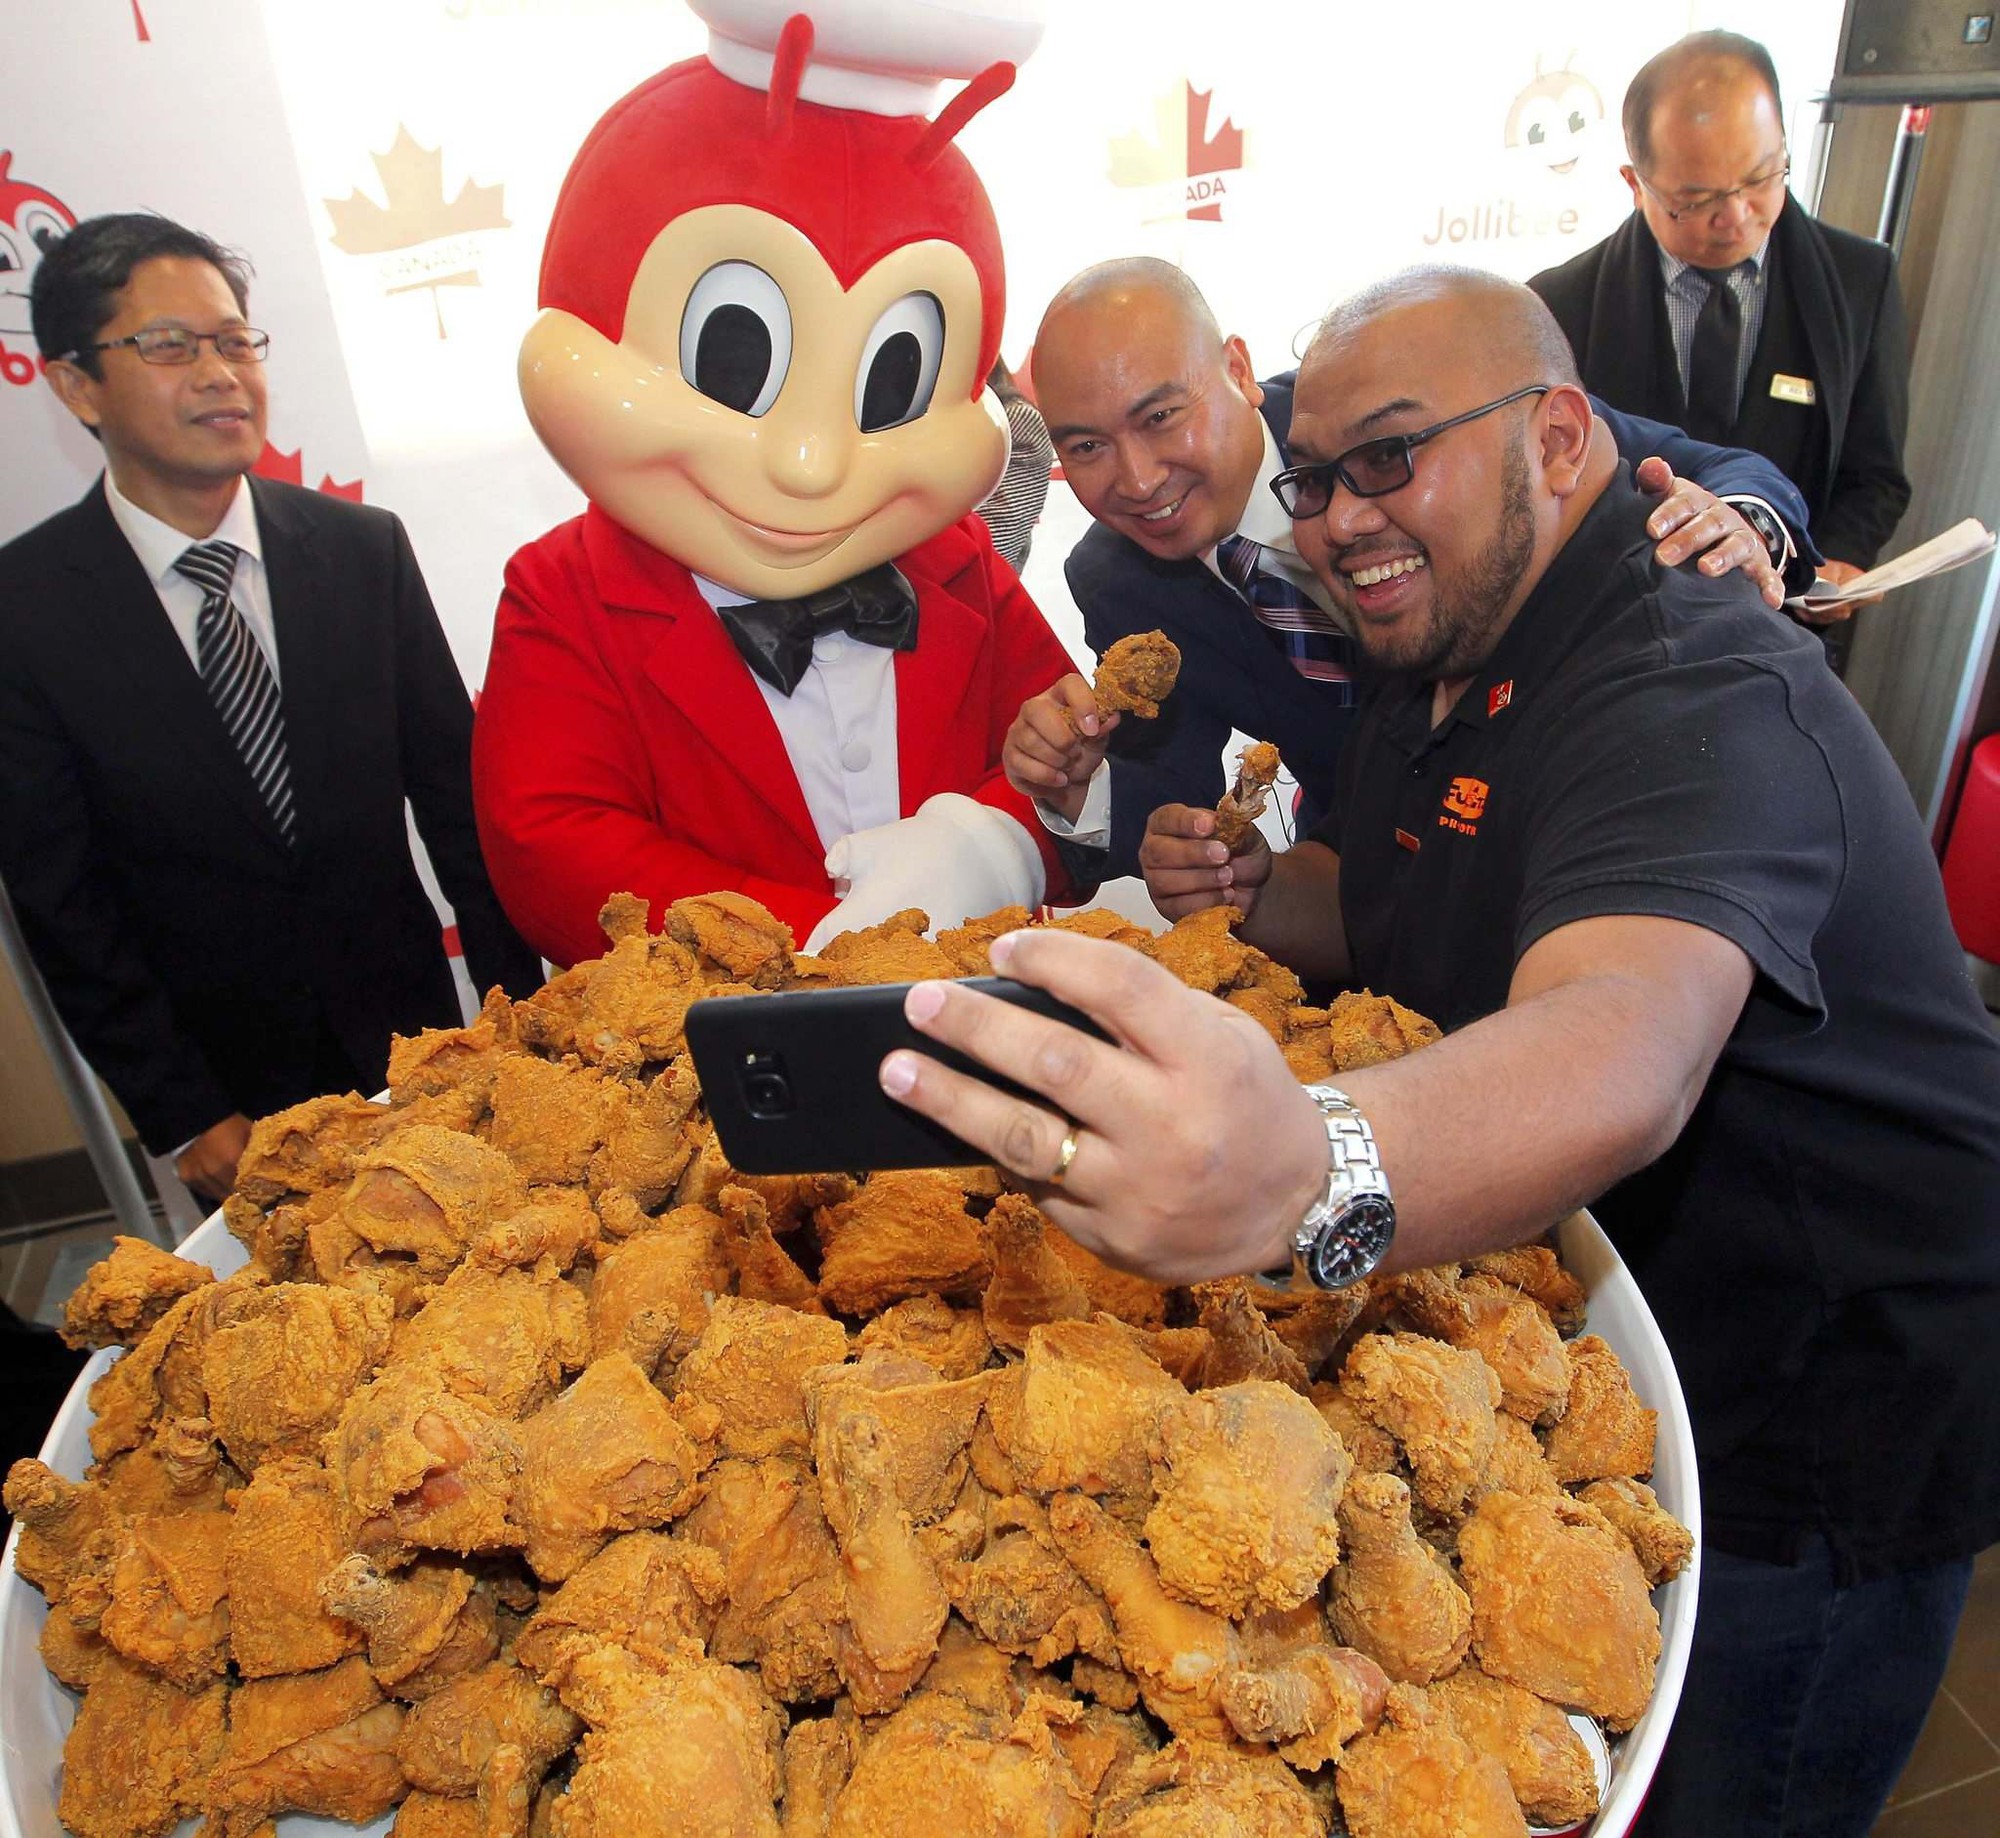 Câu chuyện về Jollibee - thủ phạm khiến đế chế McDonalds mất 40 năm vẫn không thể đứng số 1 tại Philippines - Ảnh 6.